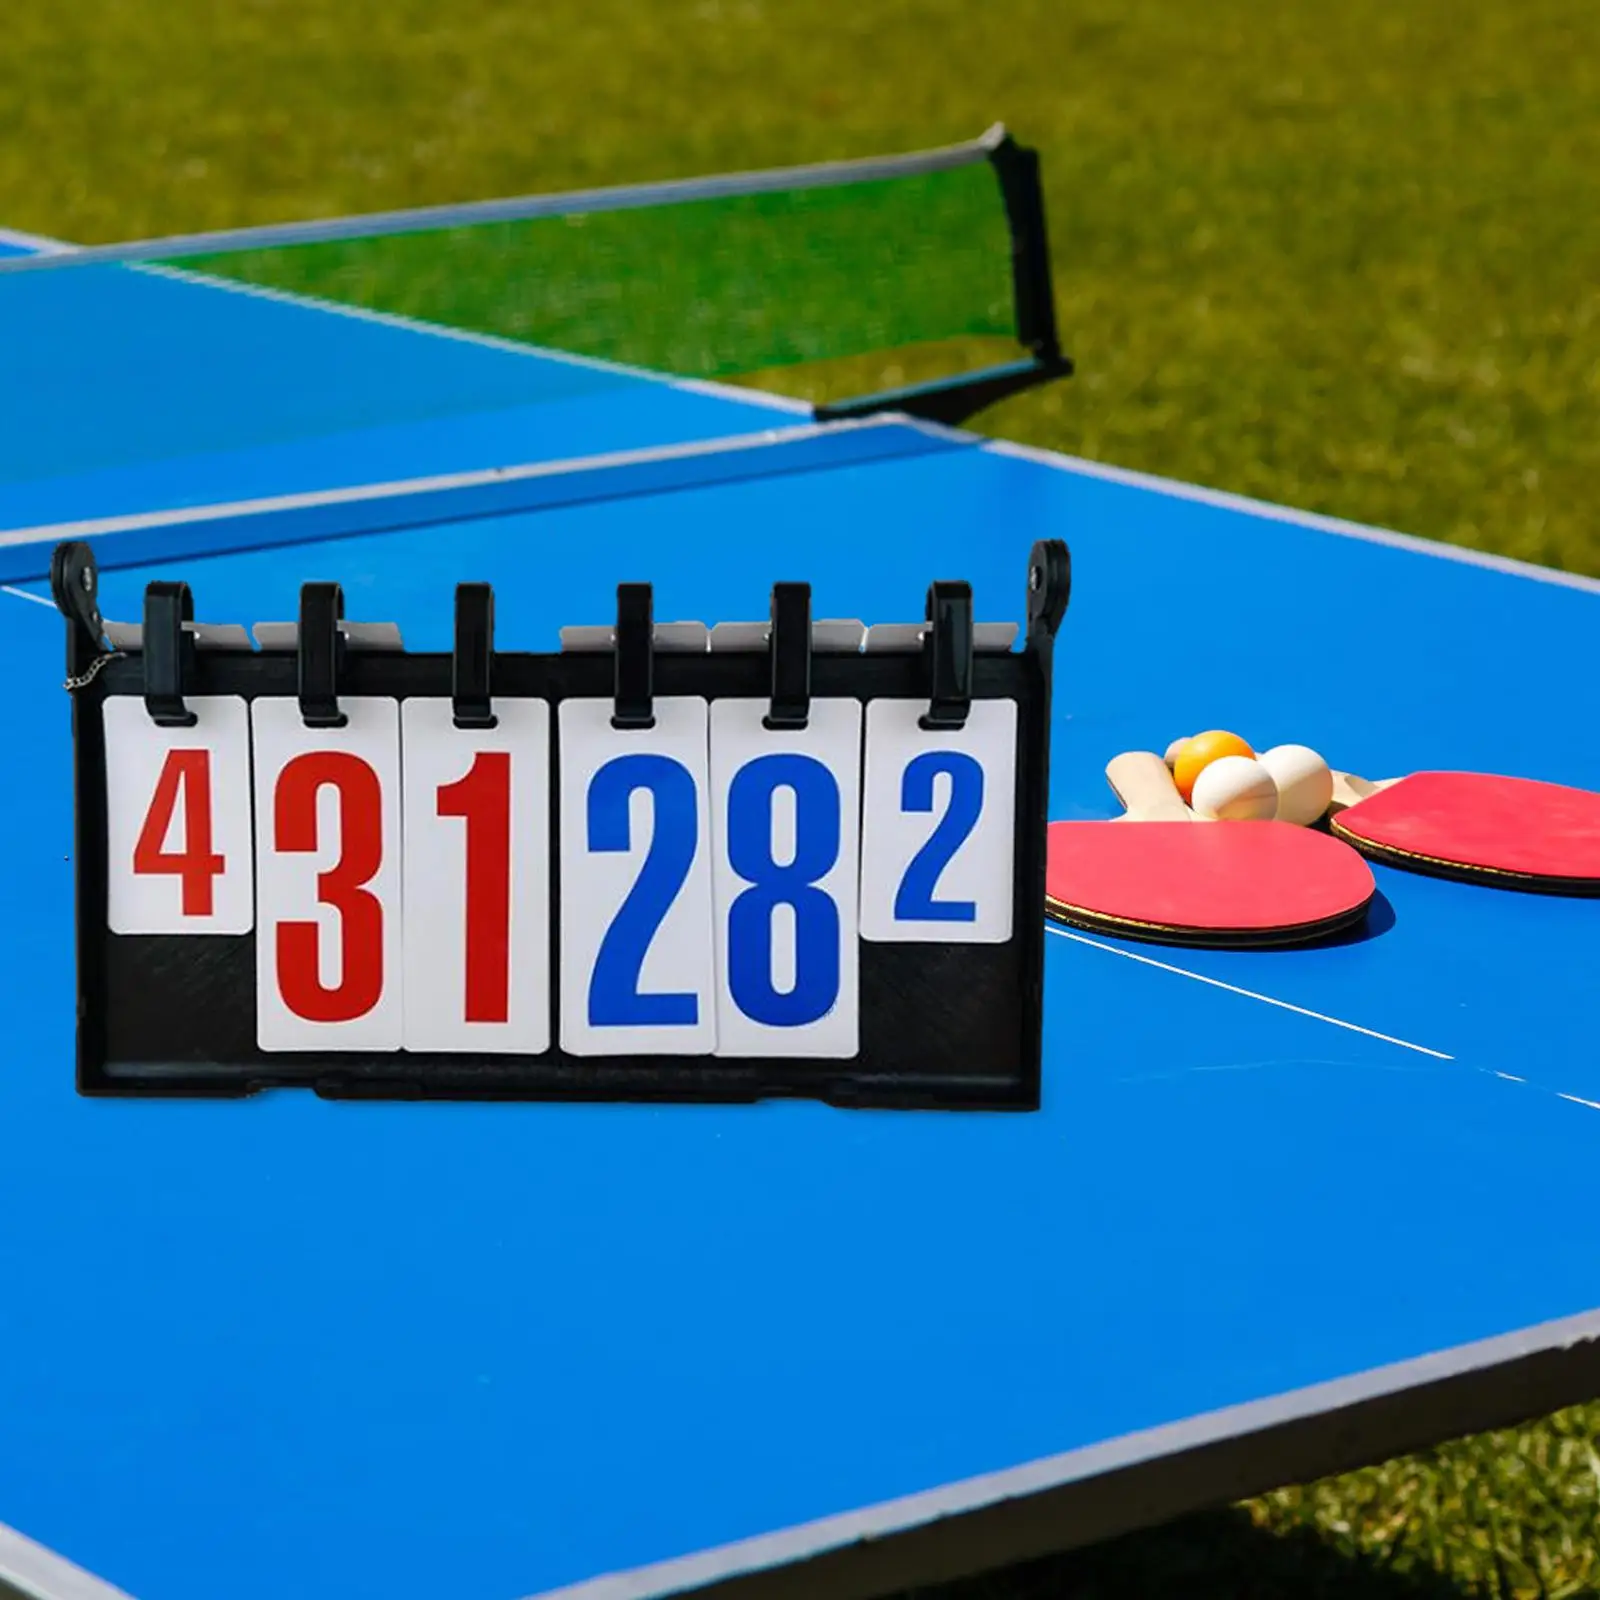 Table Top Scoreboard Table Tennis Scoreboard Score Board Professional for